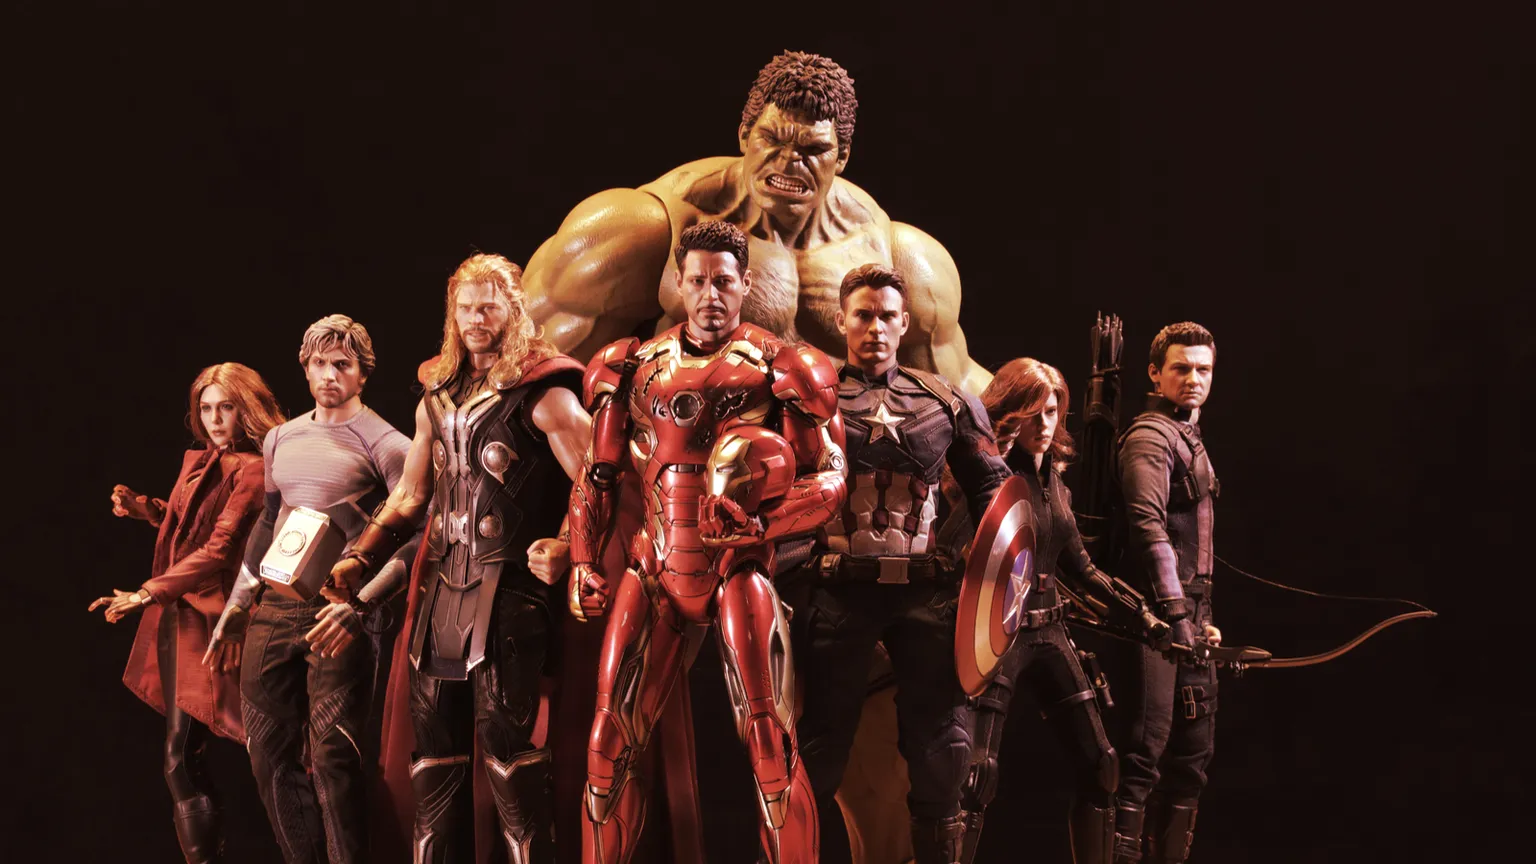 Los Vengadores es una propiedad de Marvel. Imagen: Shutterstock